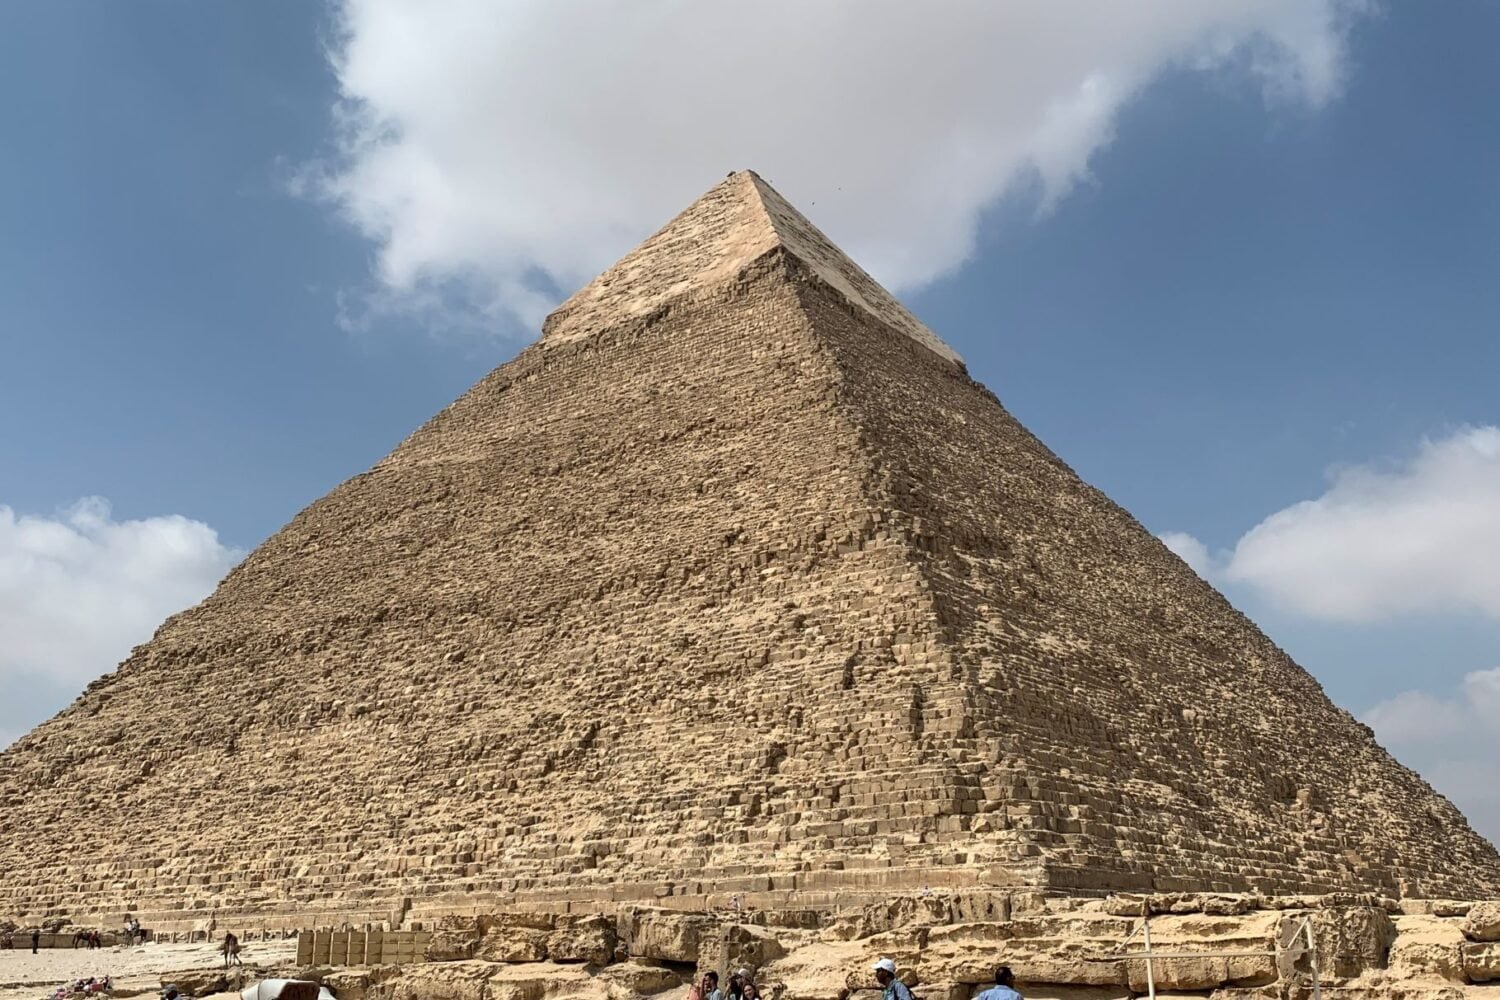 Pyramids & Abu Simbel In 4 Days From Australia & New Zealand